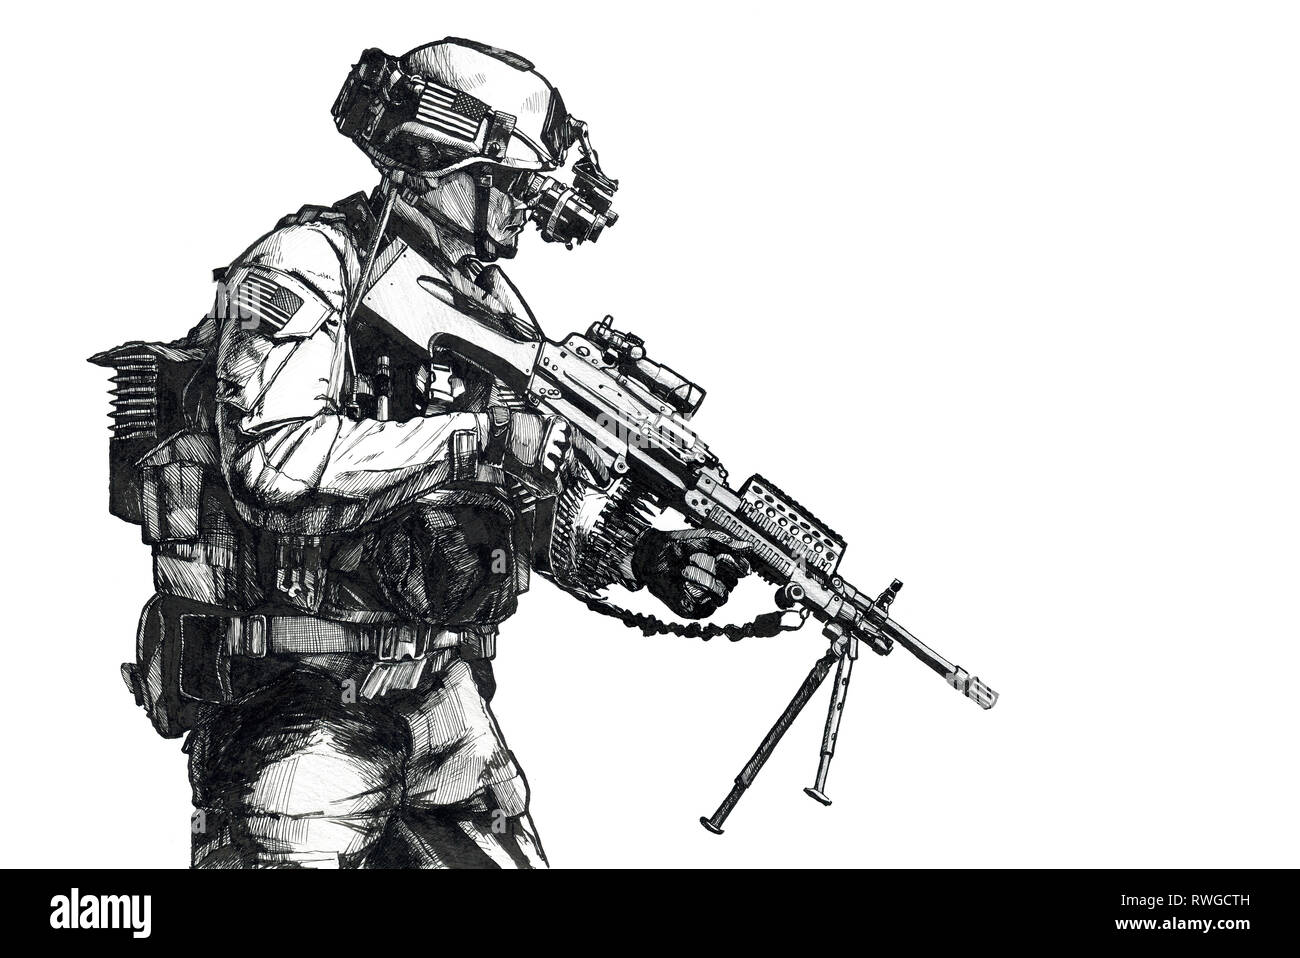 Image de la main de l'armée américaine avec un Ranger de mitrailleuse et de lunettes de vision de nuit. Banque D'Images